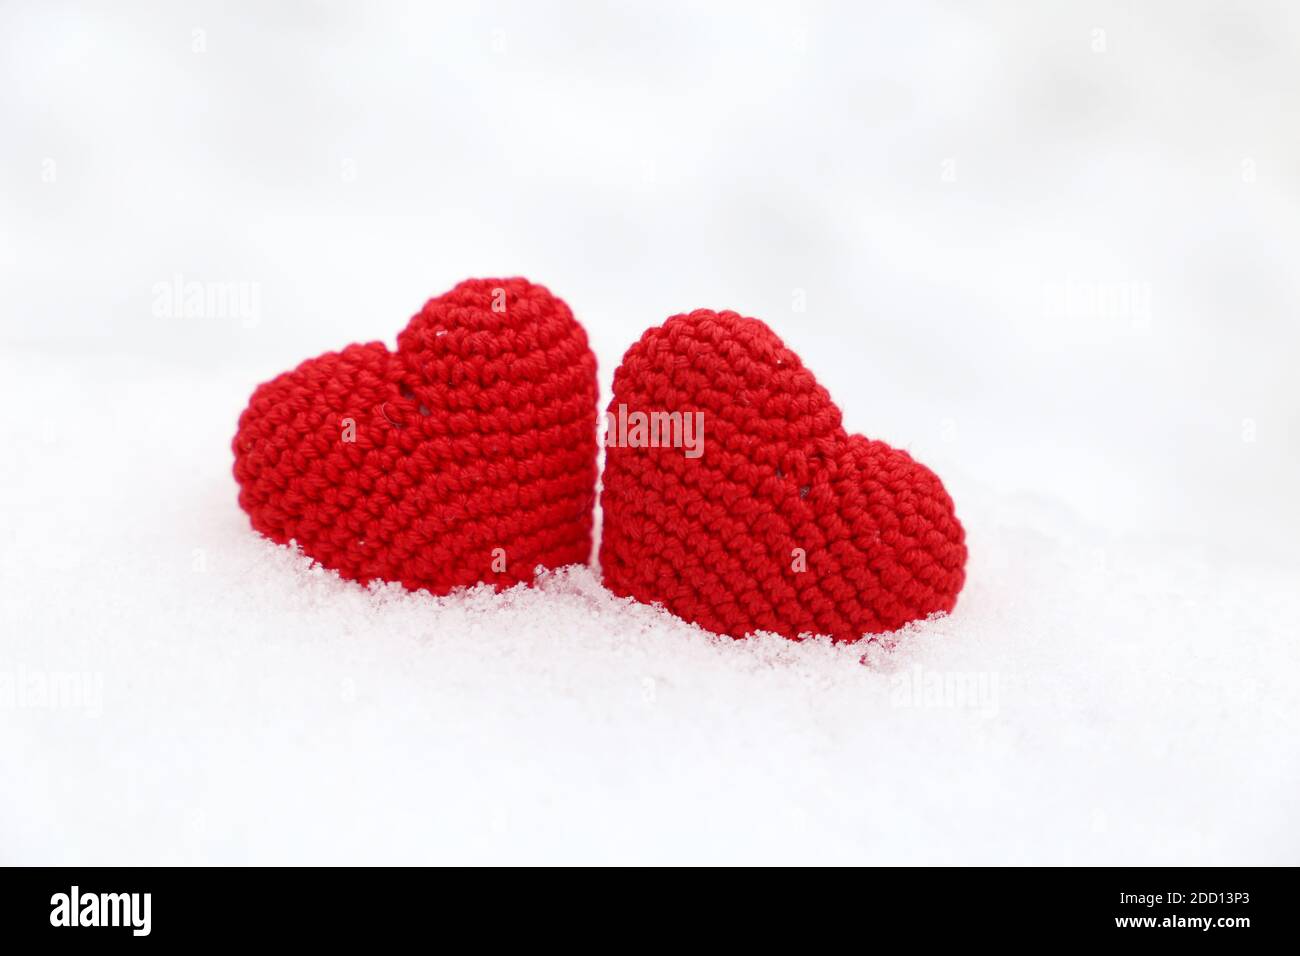 Coeurs d'amour, deux tricotés rouges symboles de passion dans la dérive de neige. Fond pour la carte de Saint-Valentin Banque D'Images